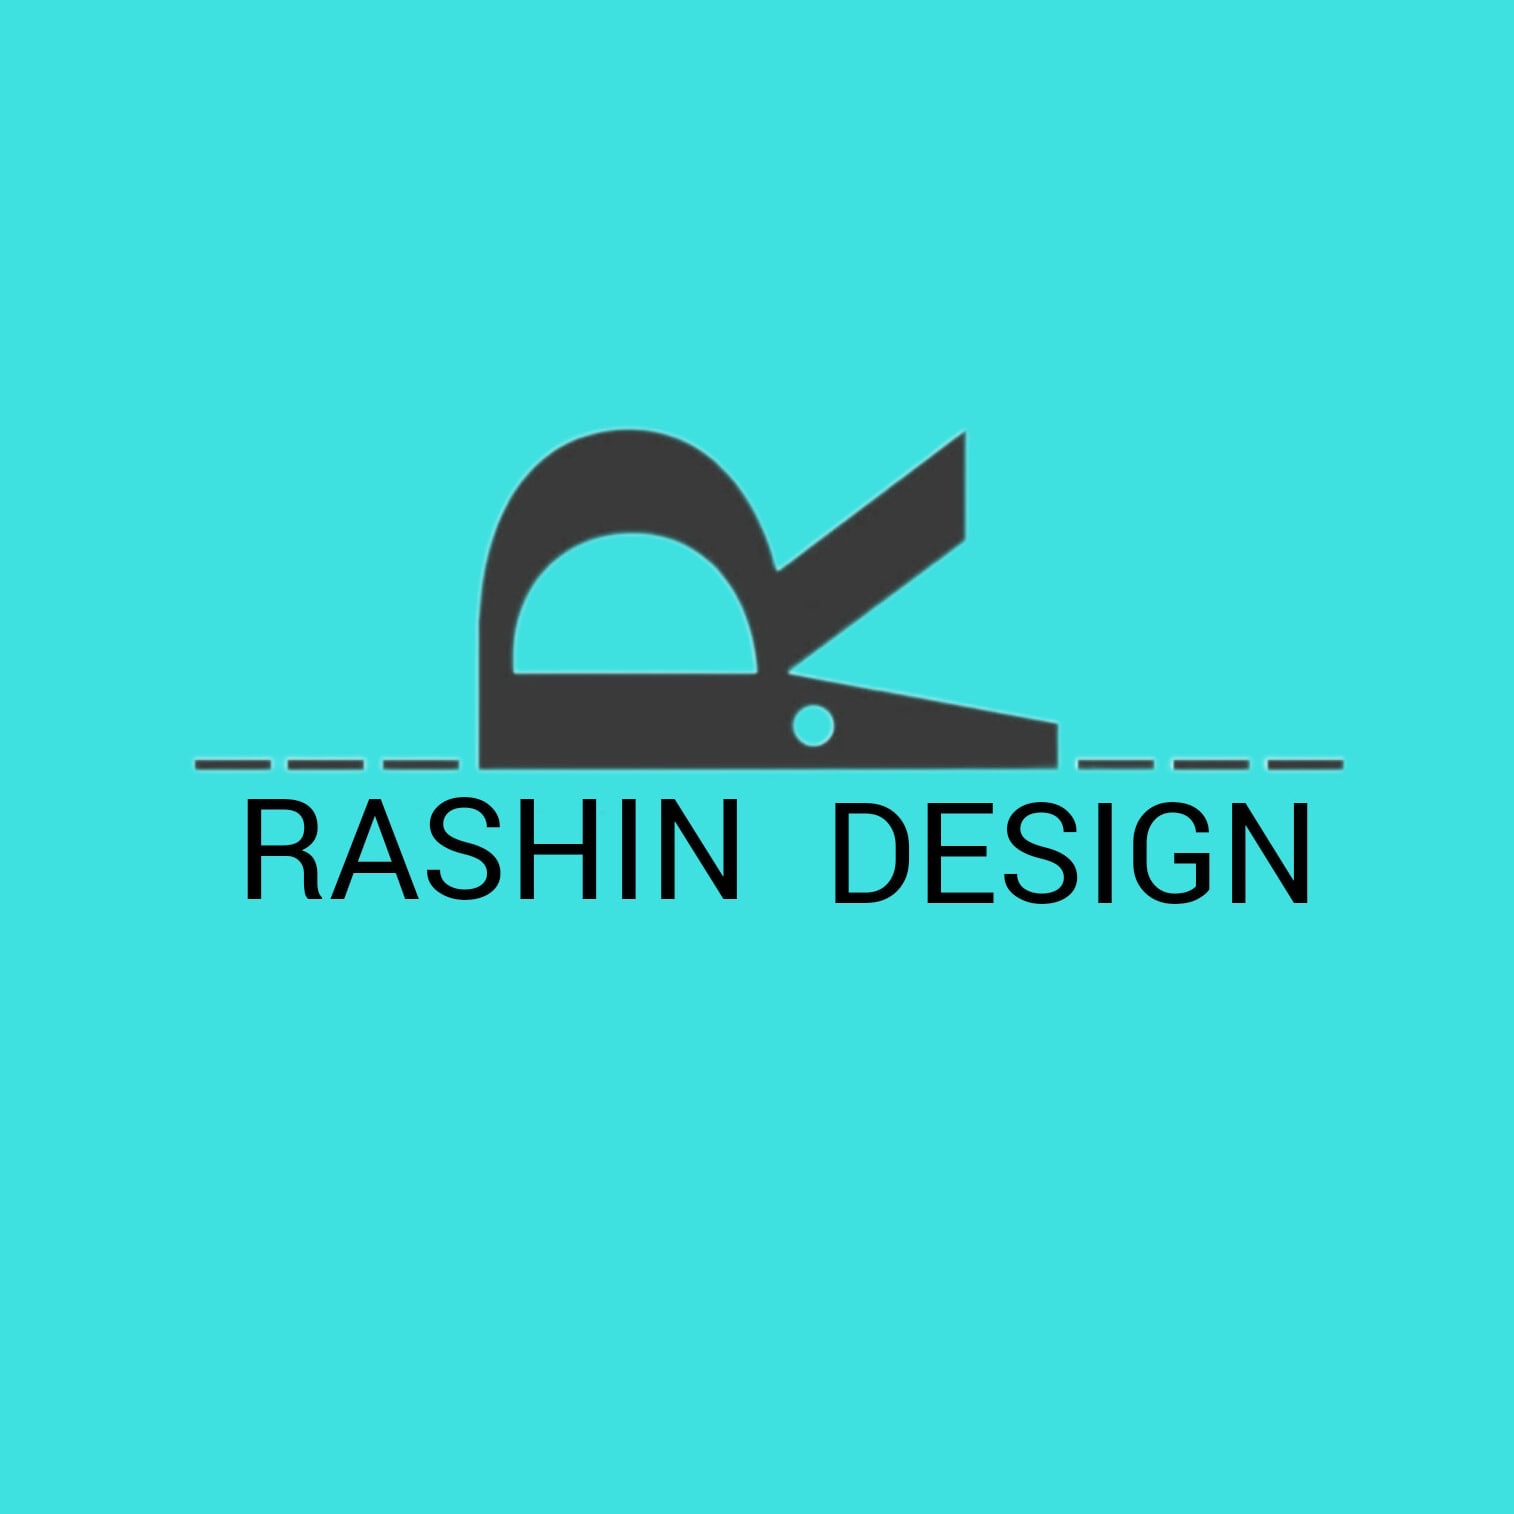 Rashin Design